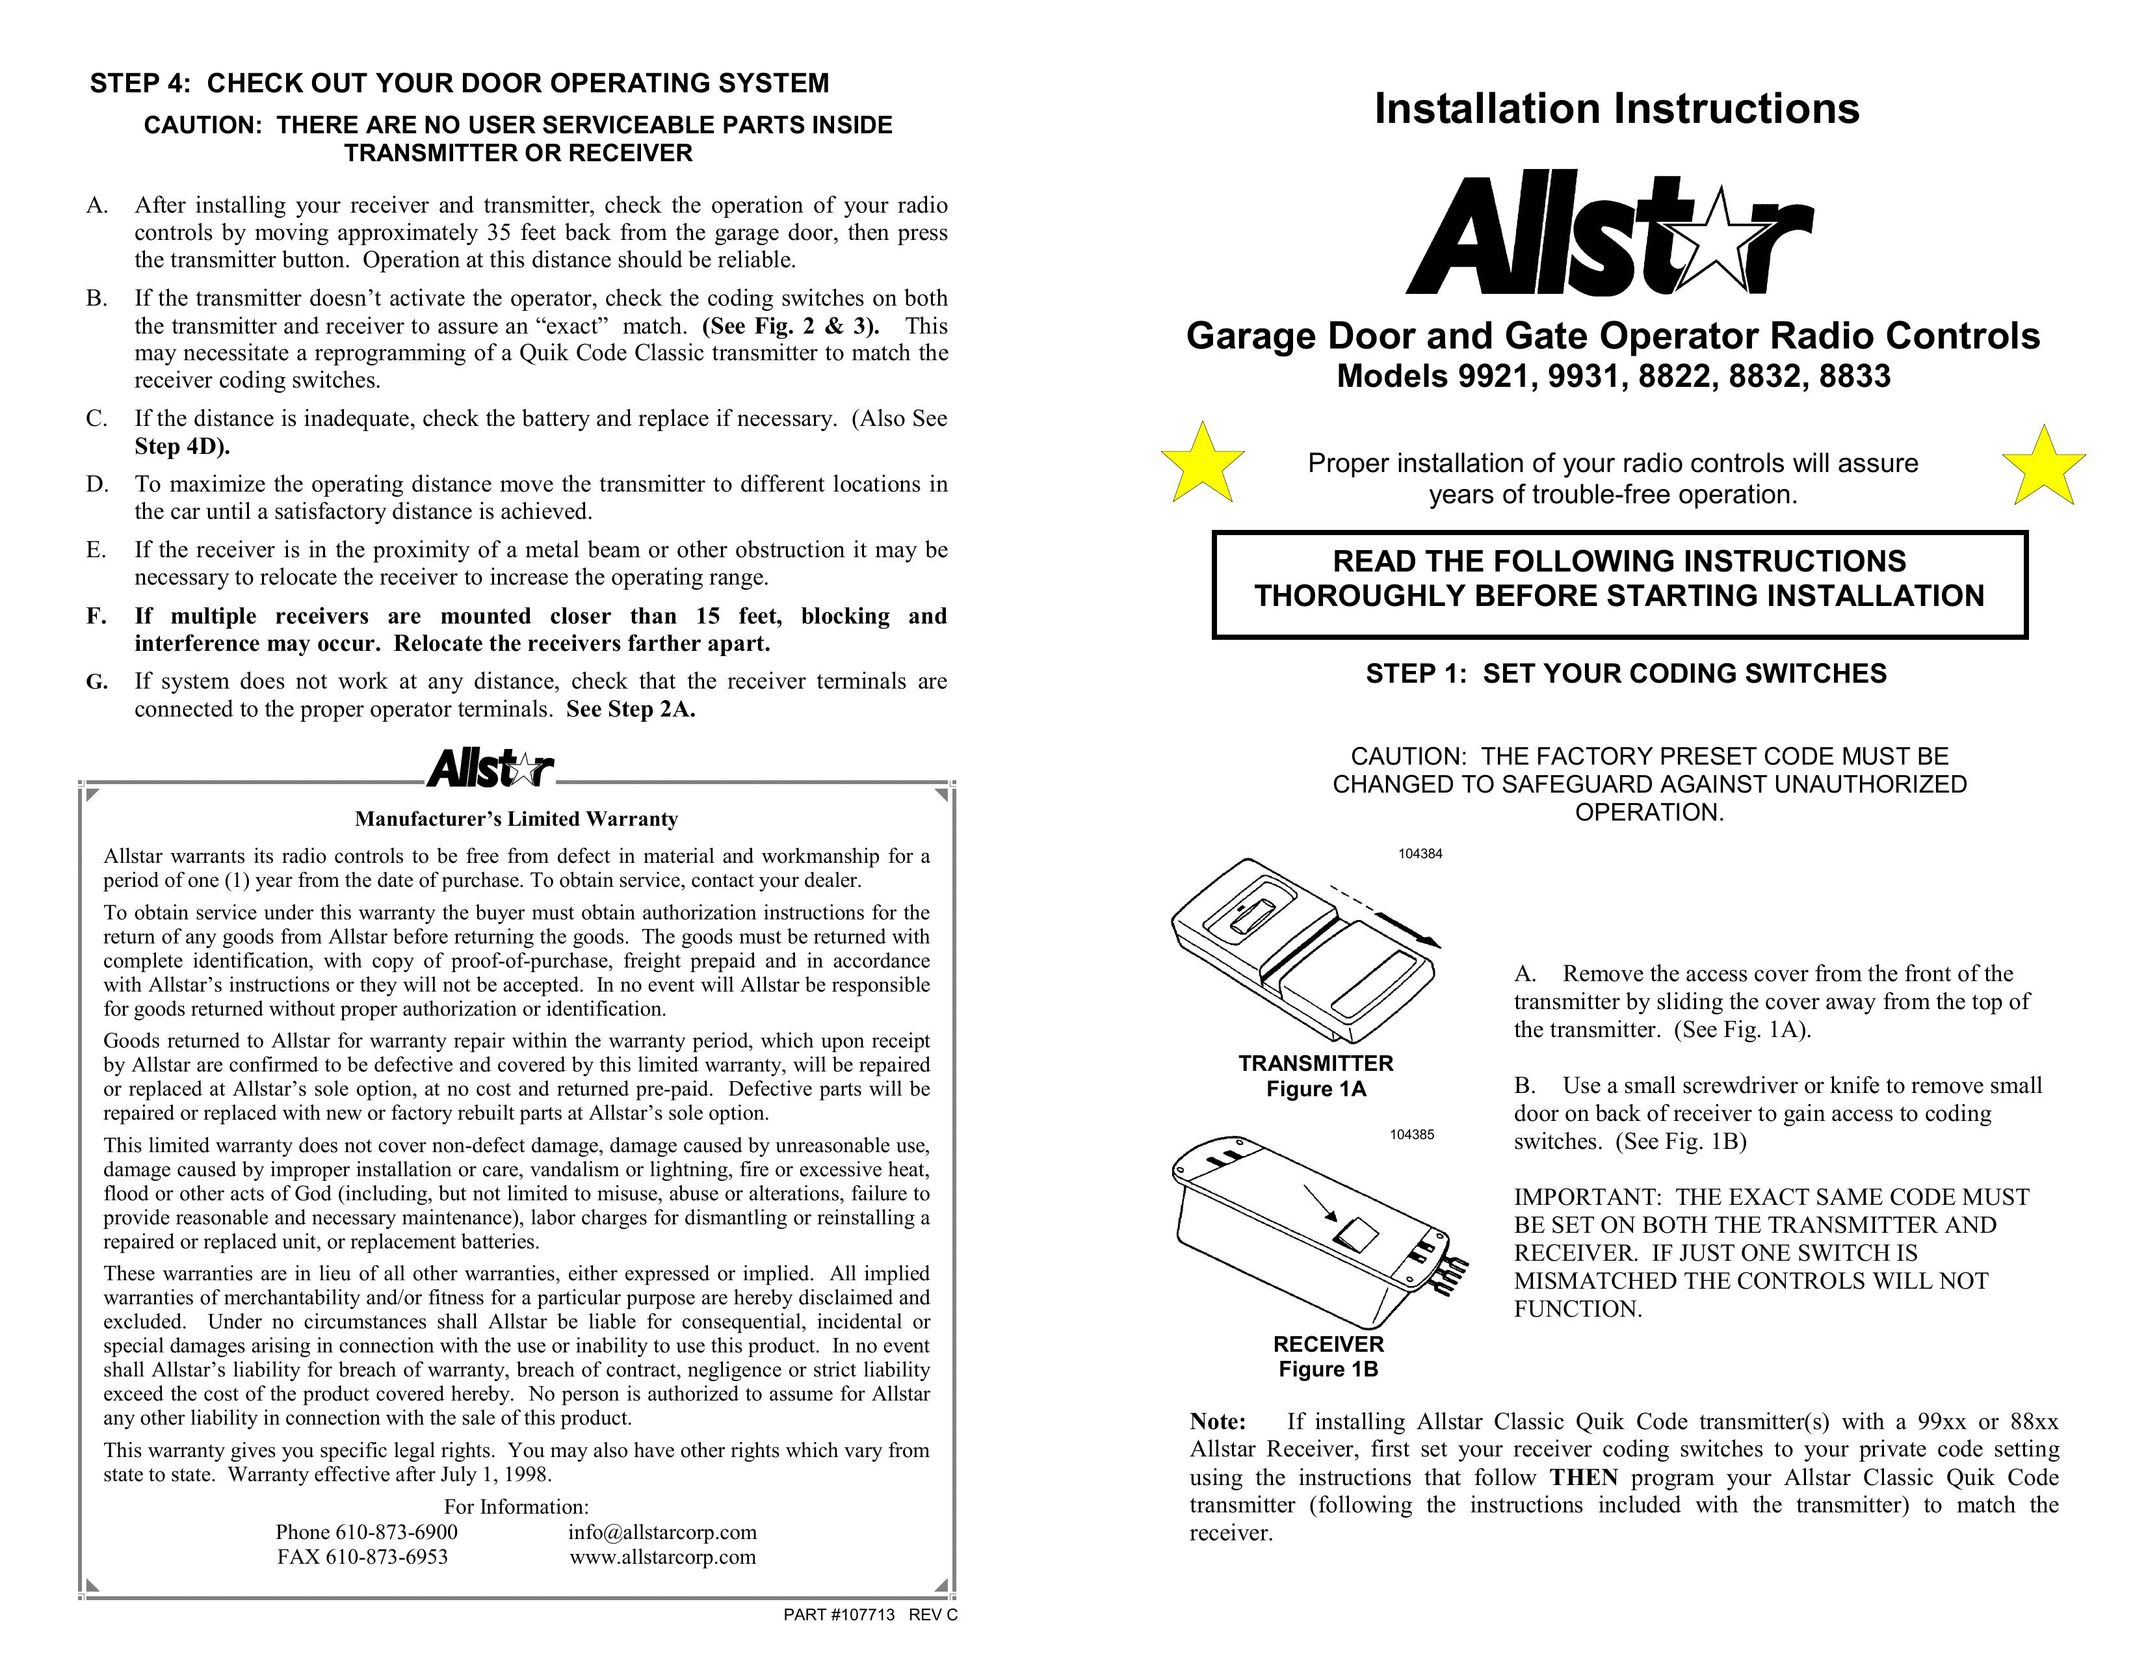 Allstar Products Group 9921 Garage Door Opener User Manual